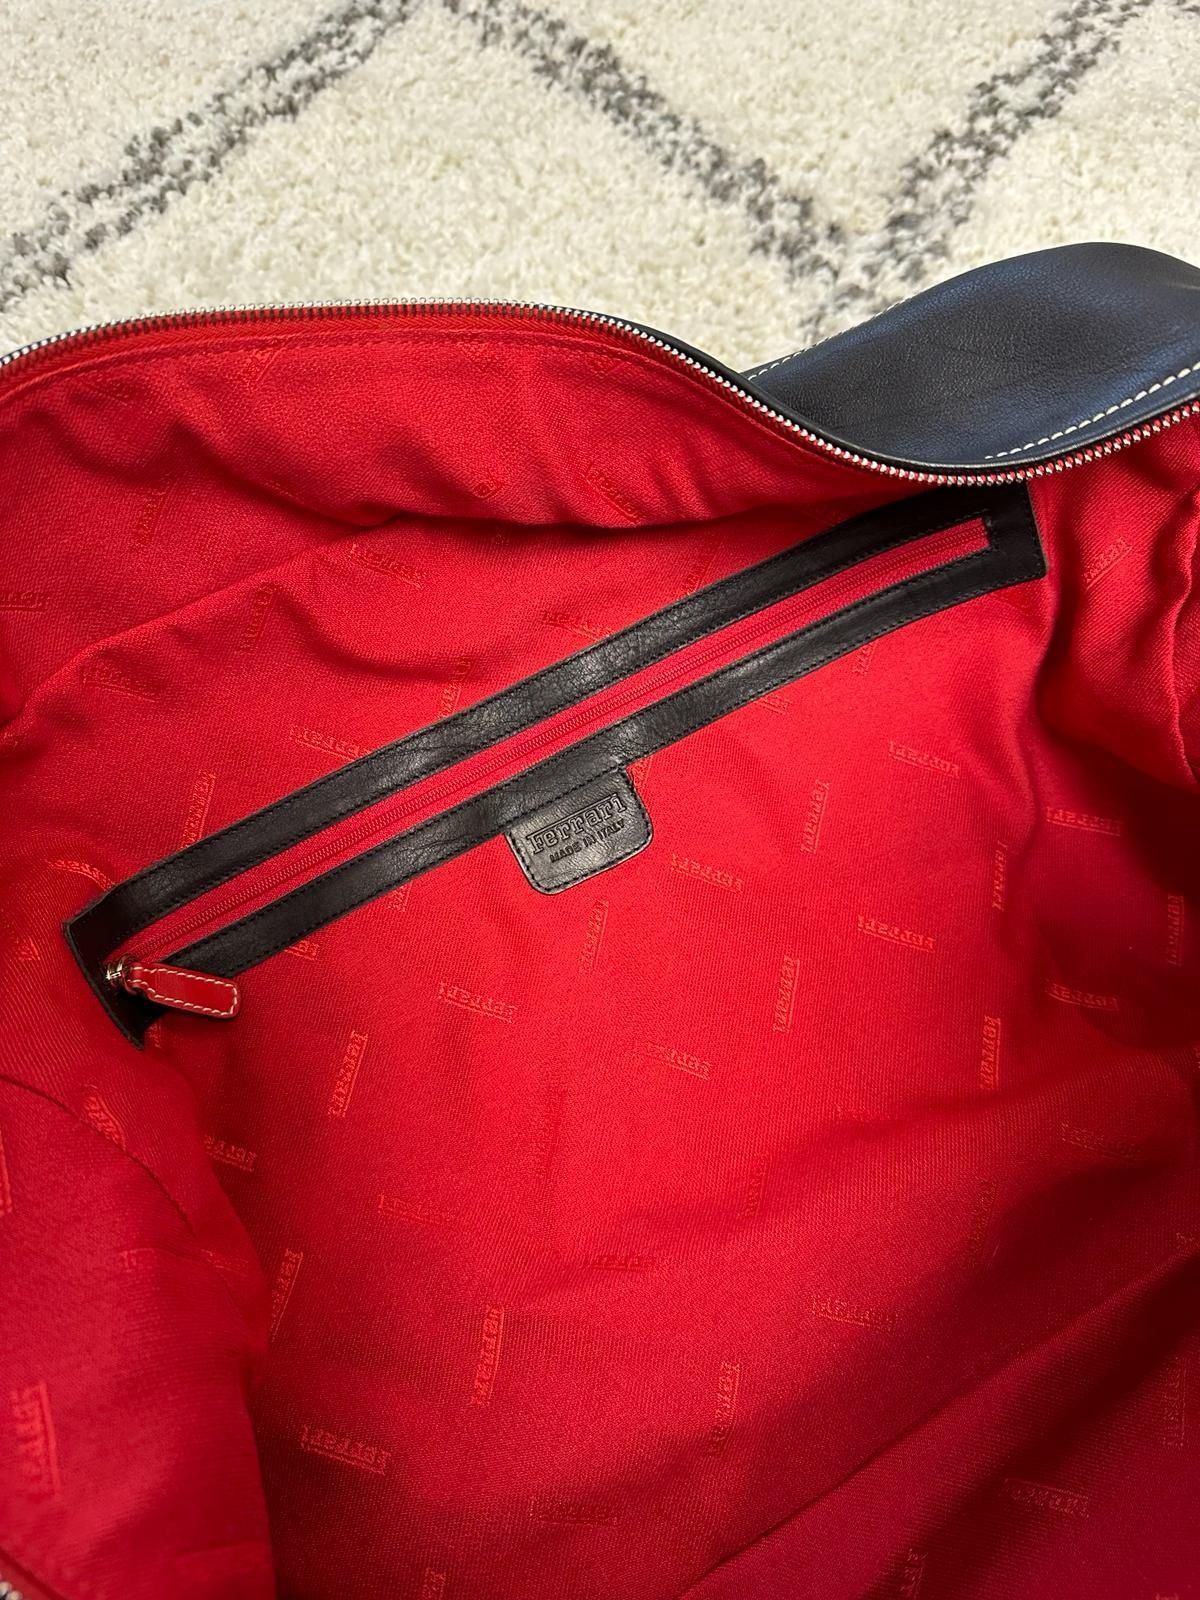 Ferrari schedoni geanta piele originala